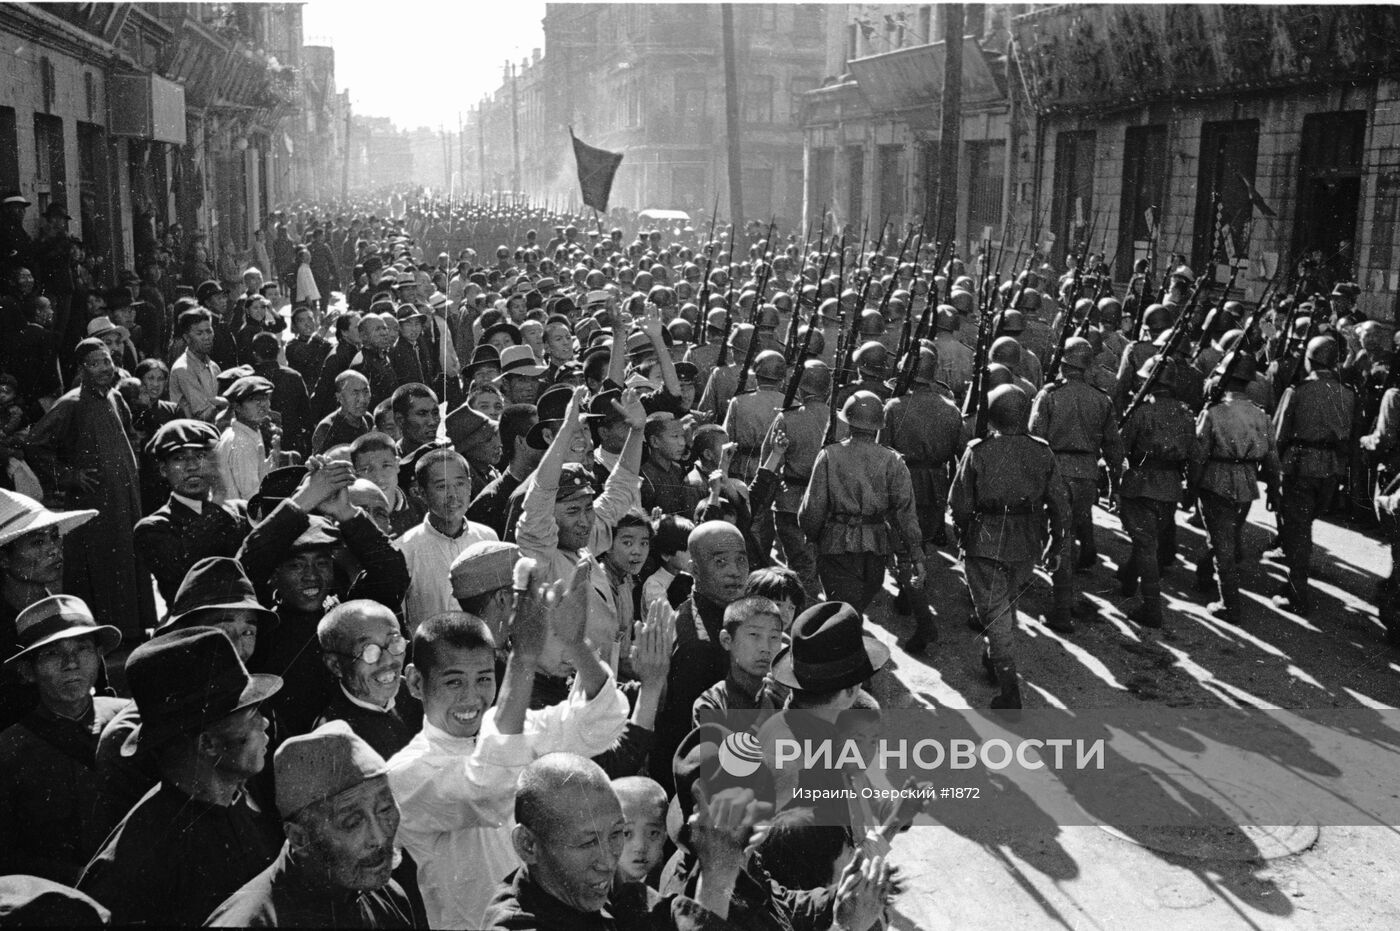 16 сентября принимал парад в харбине. Харбин парад Победы 1945. Парад советских войск в Харбине в 1945 году. Парад Победы в Харбине 1945 год. Парад Победы советских войск в Харбине 16 сентября 1945 года.